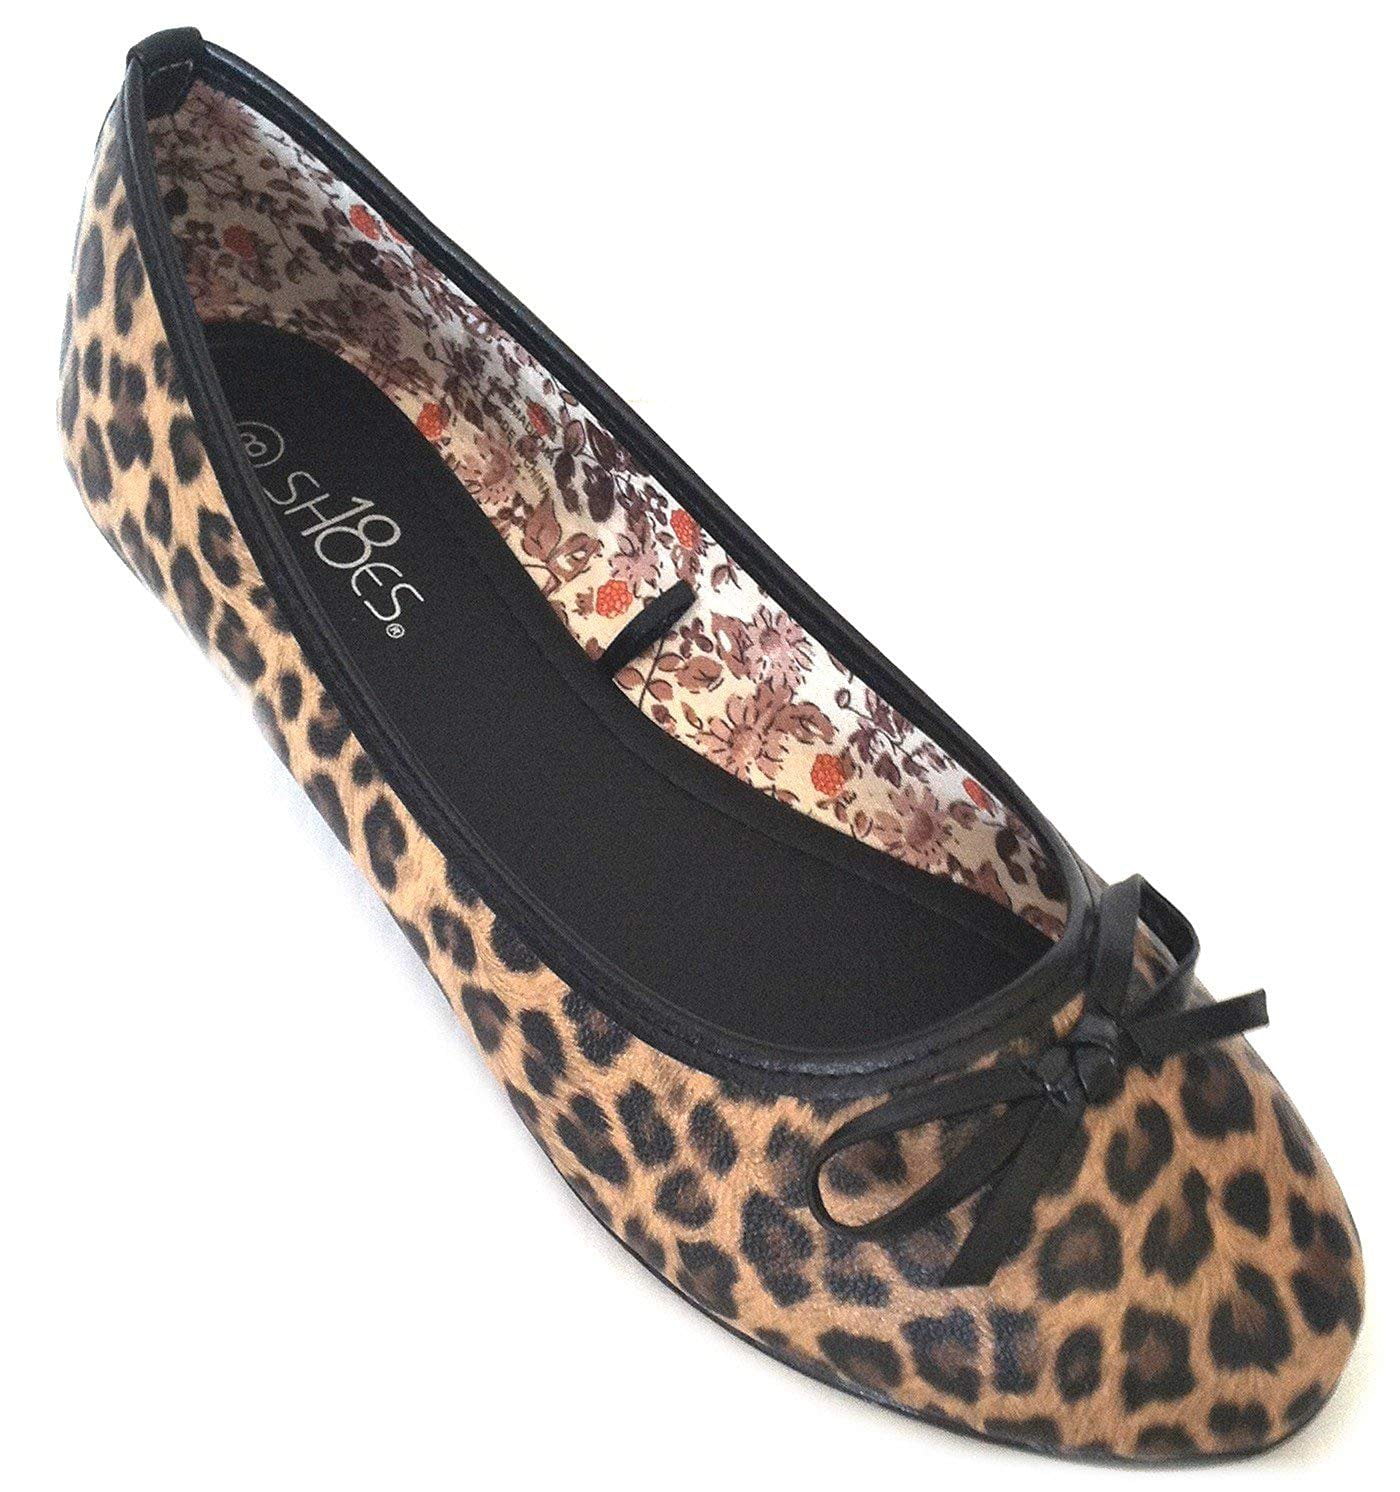 New Womens Ballerina Ballet Flats Shoes Leopard & Solids (11 